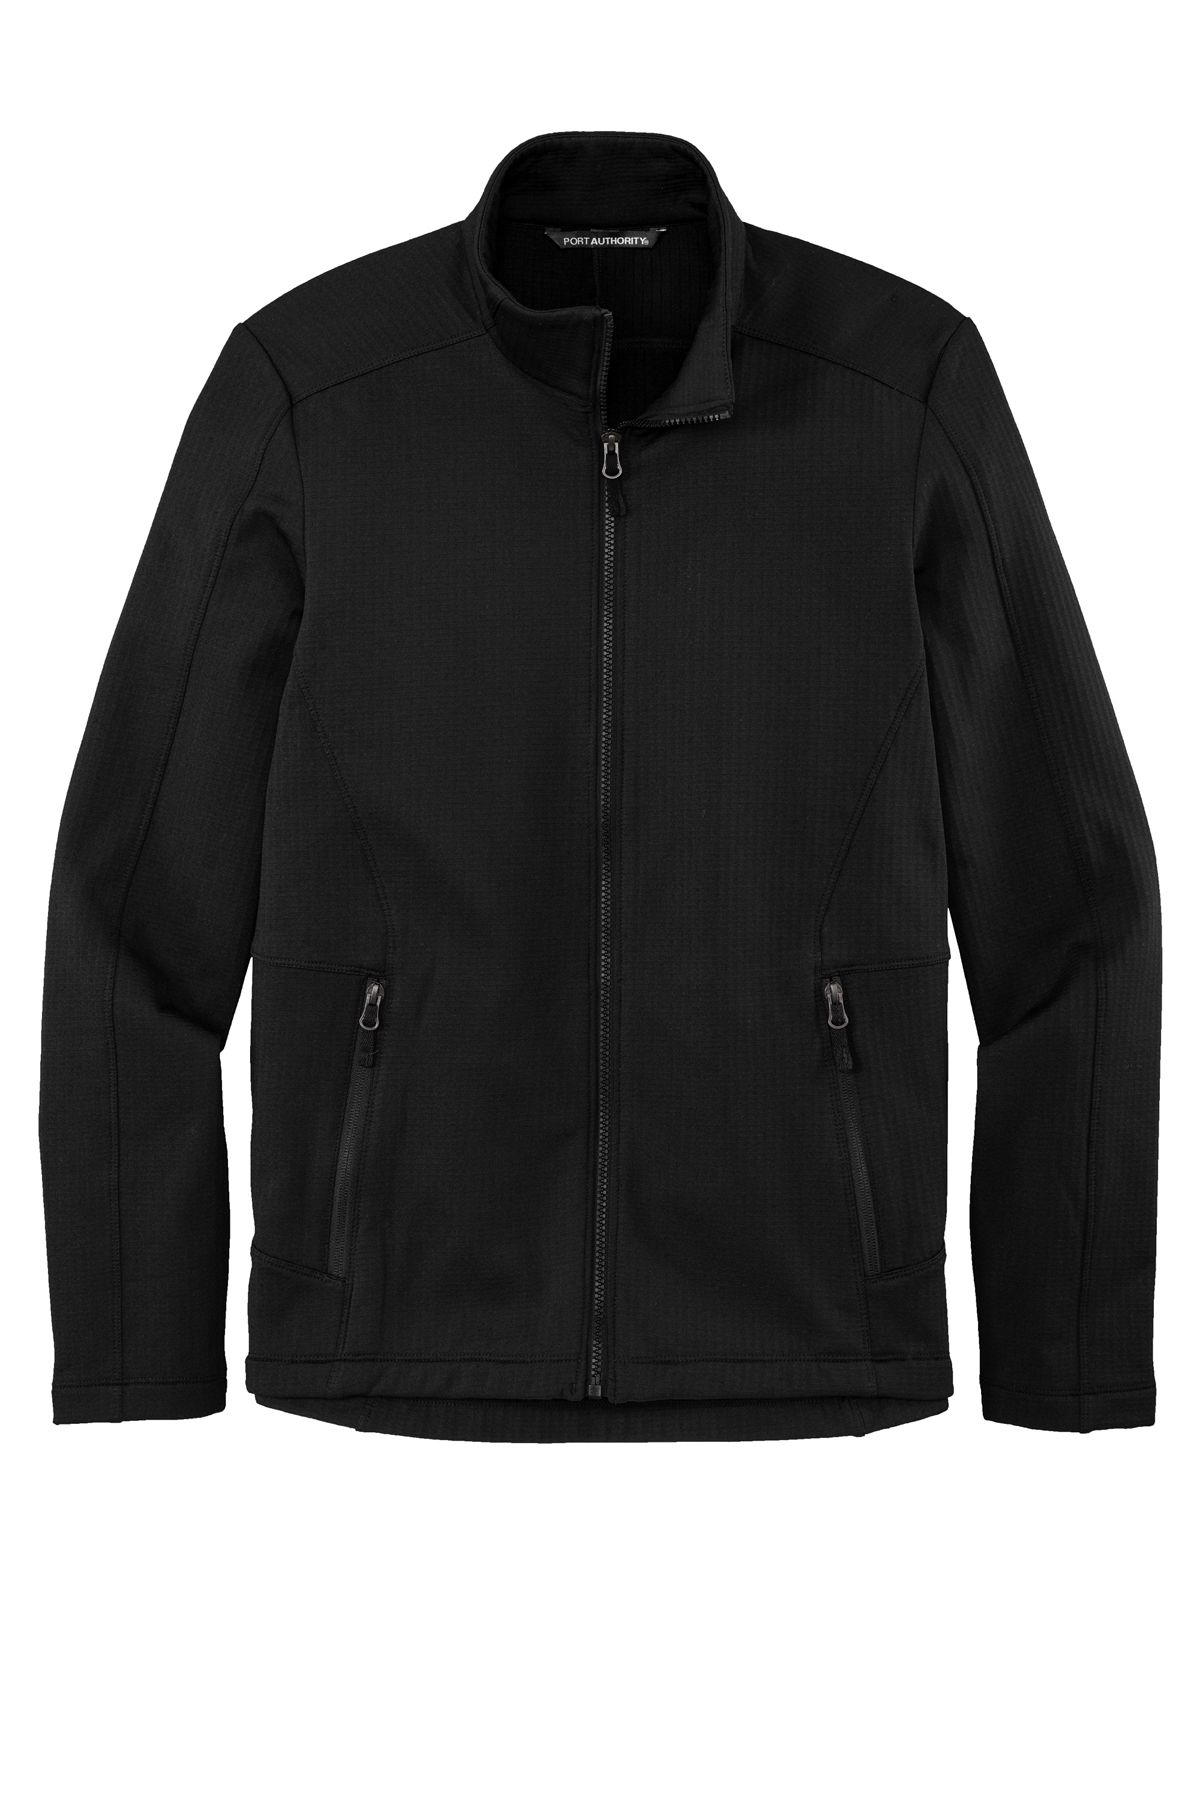 Port Authority Grid Fleece Jacket | Product | SanMar